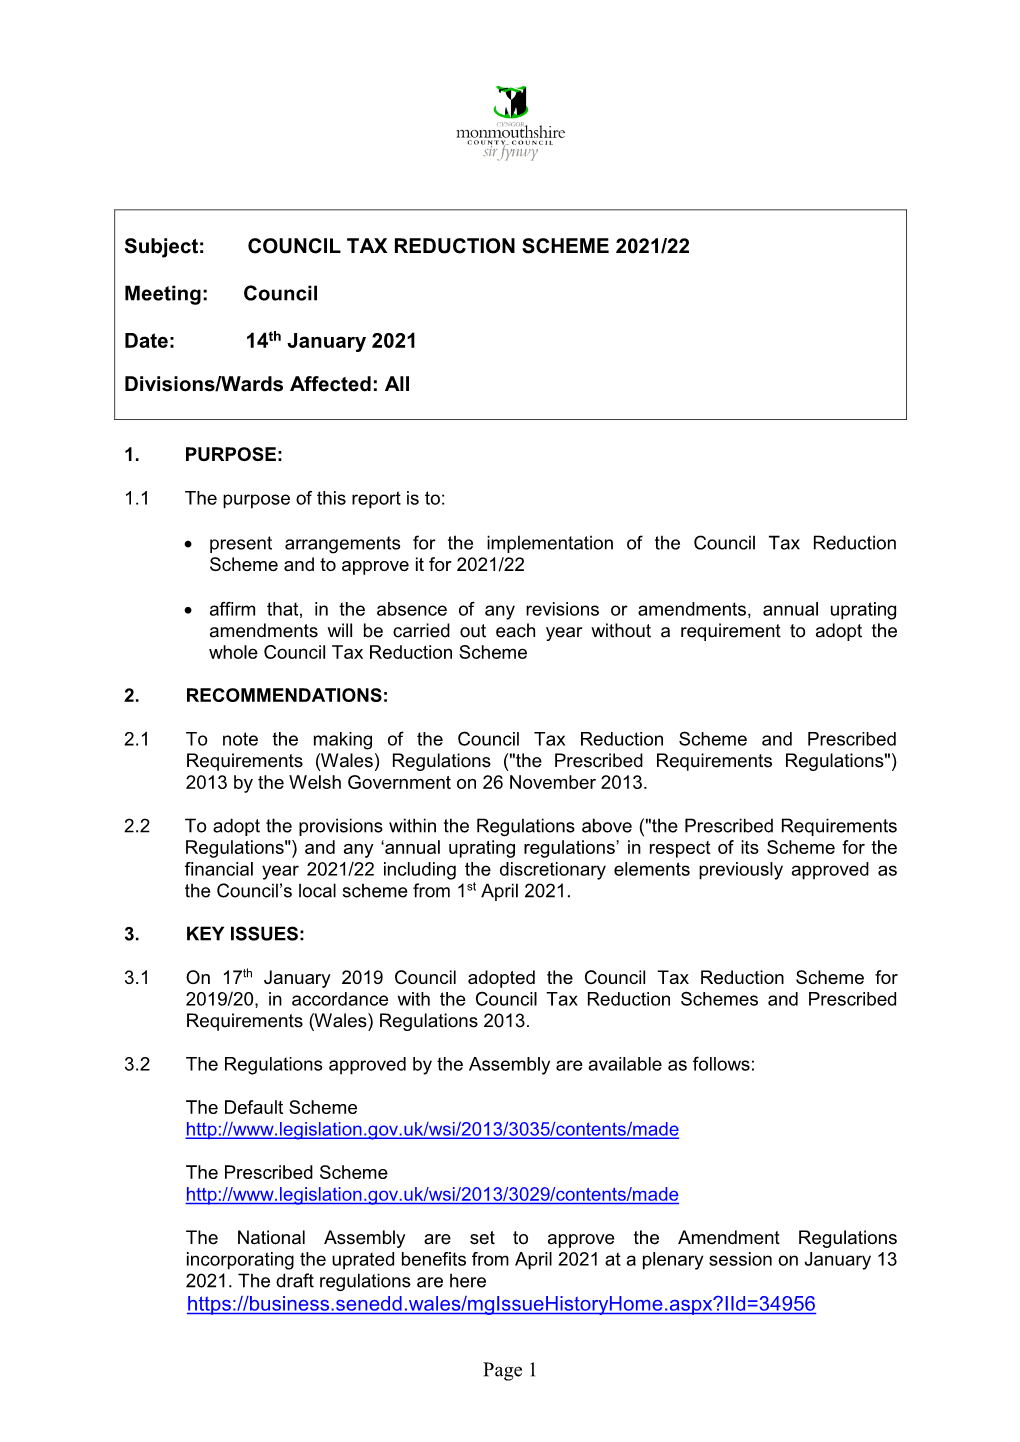 Council Tax Reduction Scheme 2021/22